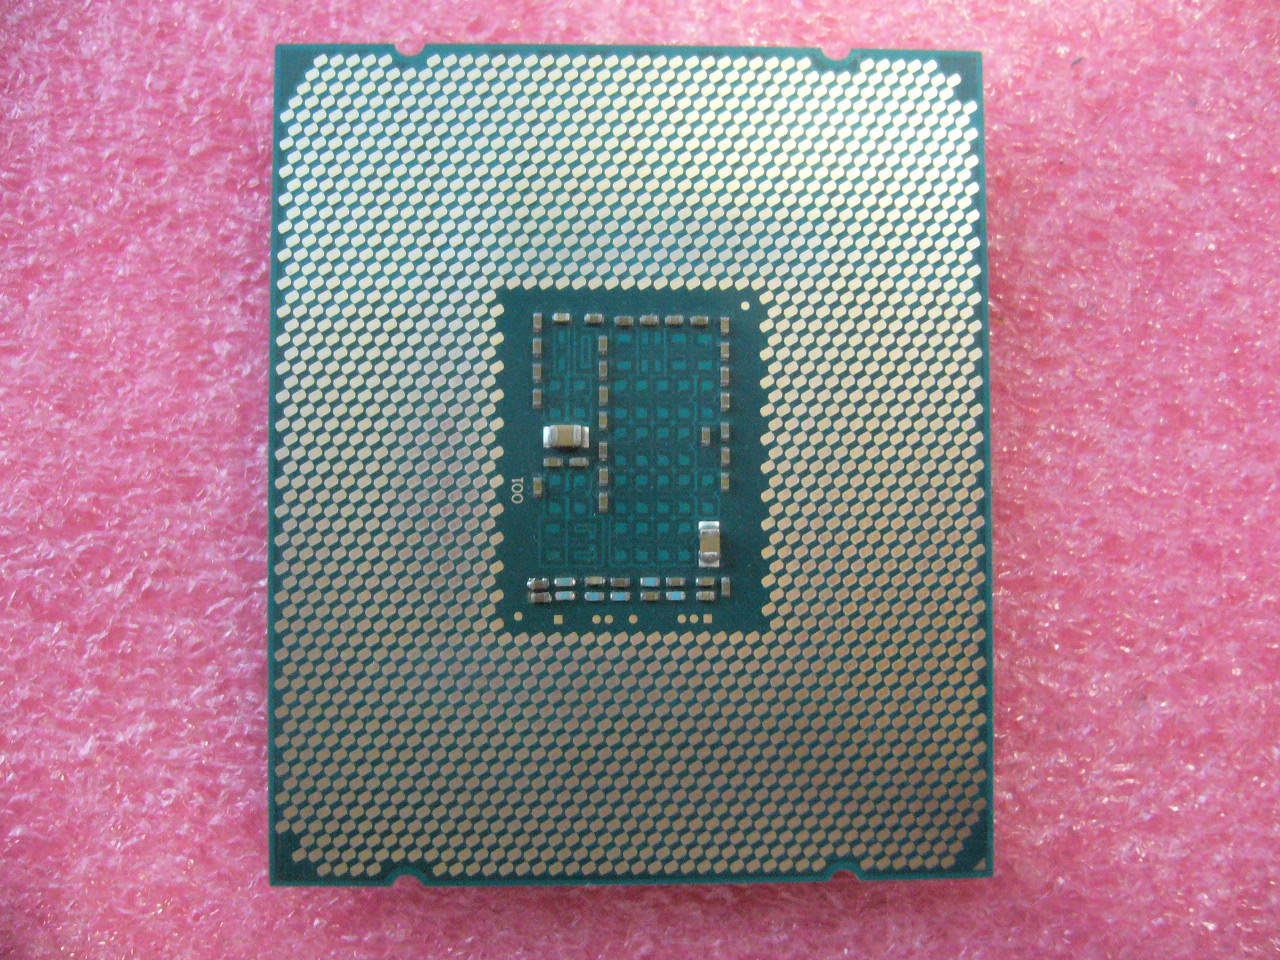 QTY 1x Intel Xeon CPU E5-2680V3 12-Cores 2.5 Ghz LGA2011-3 SR1XP Mem A, B not wo - zum Schließen ins Bild klicken